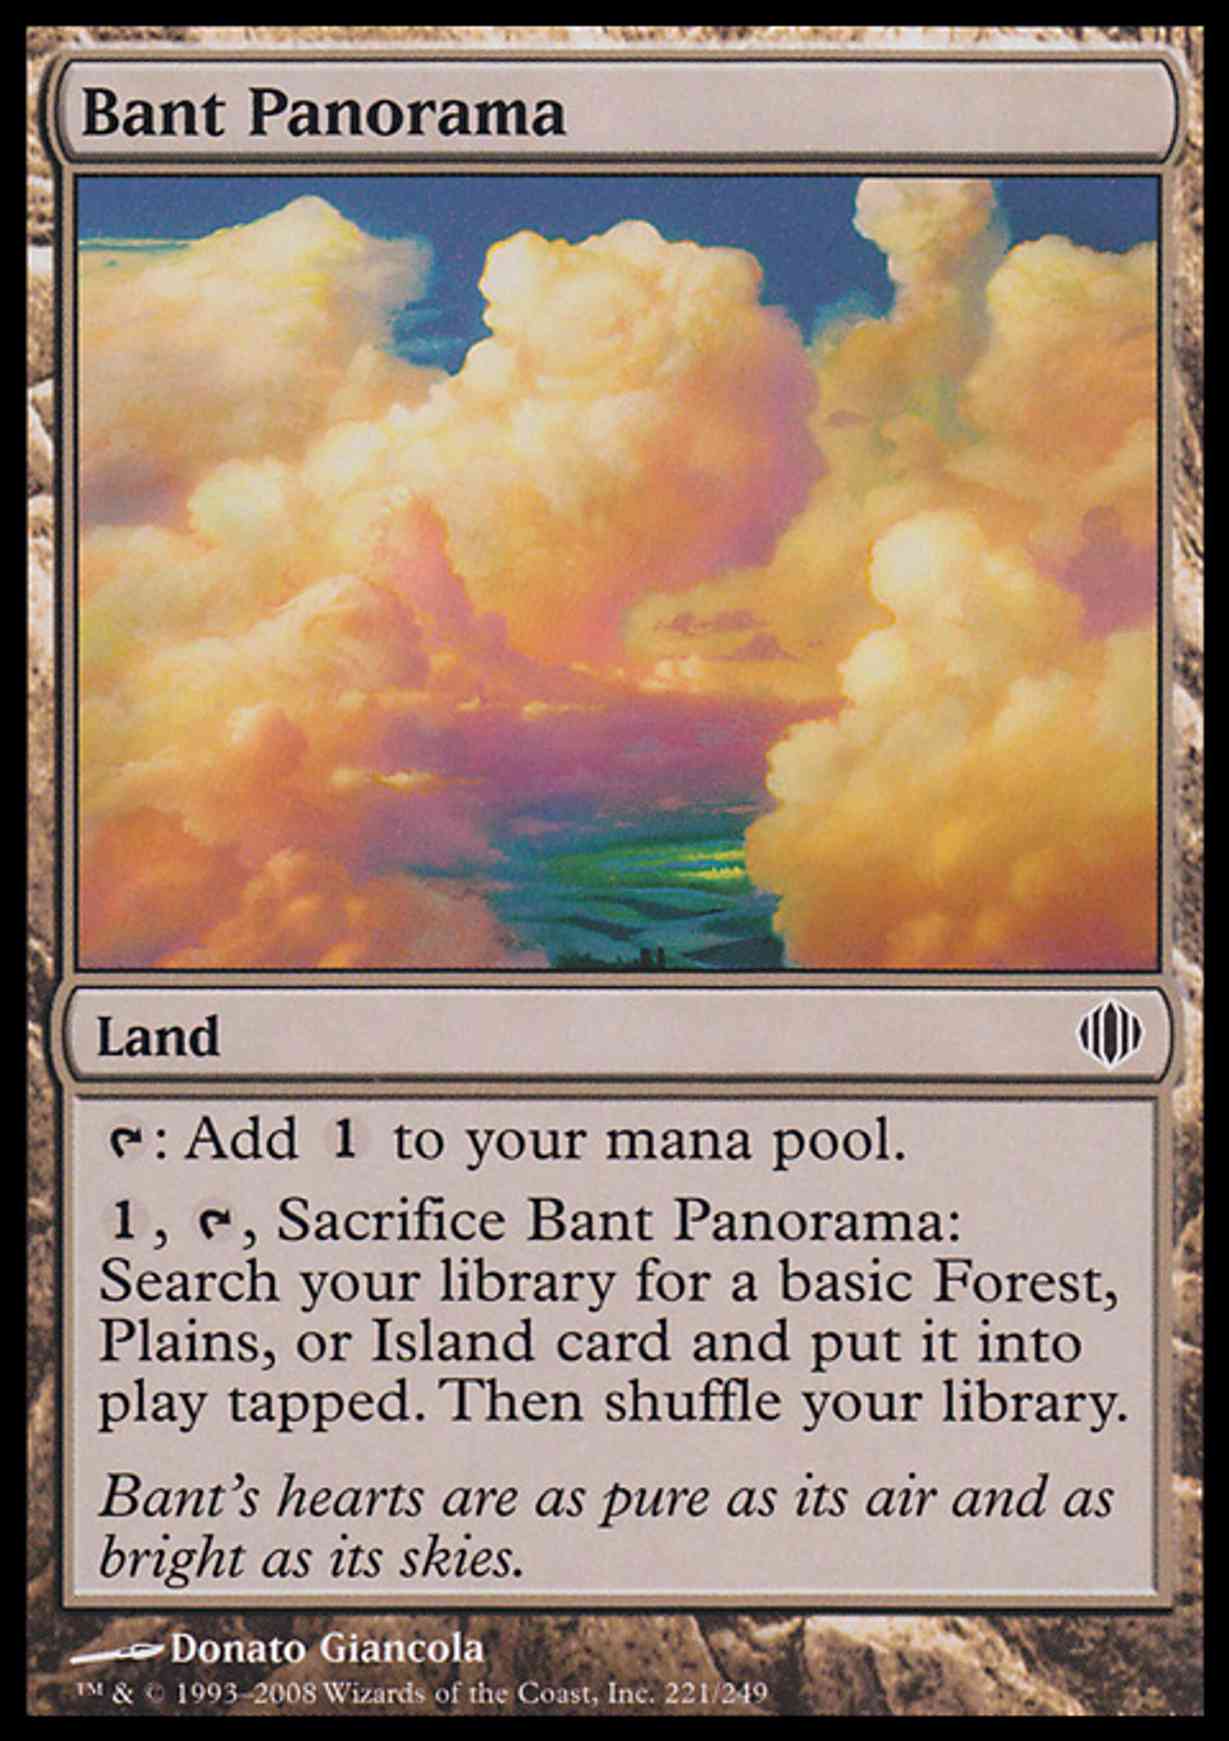 Bant Panorama magic card front